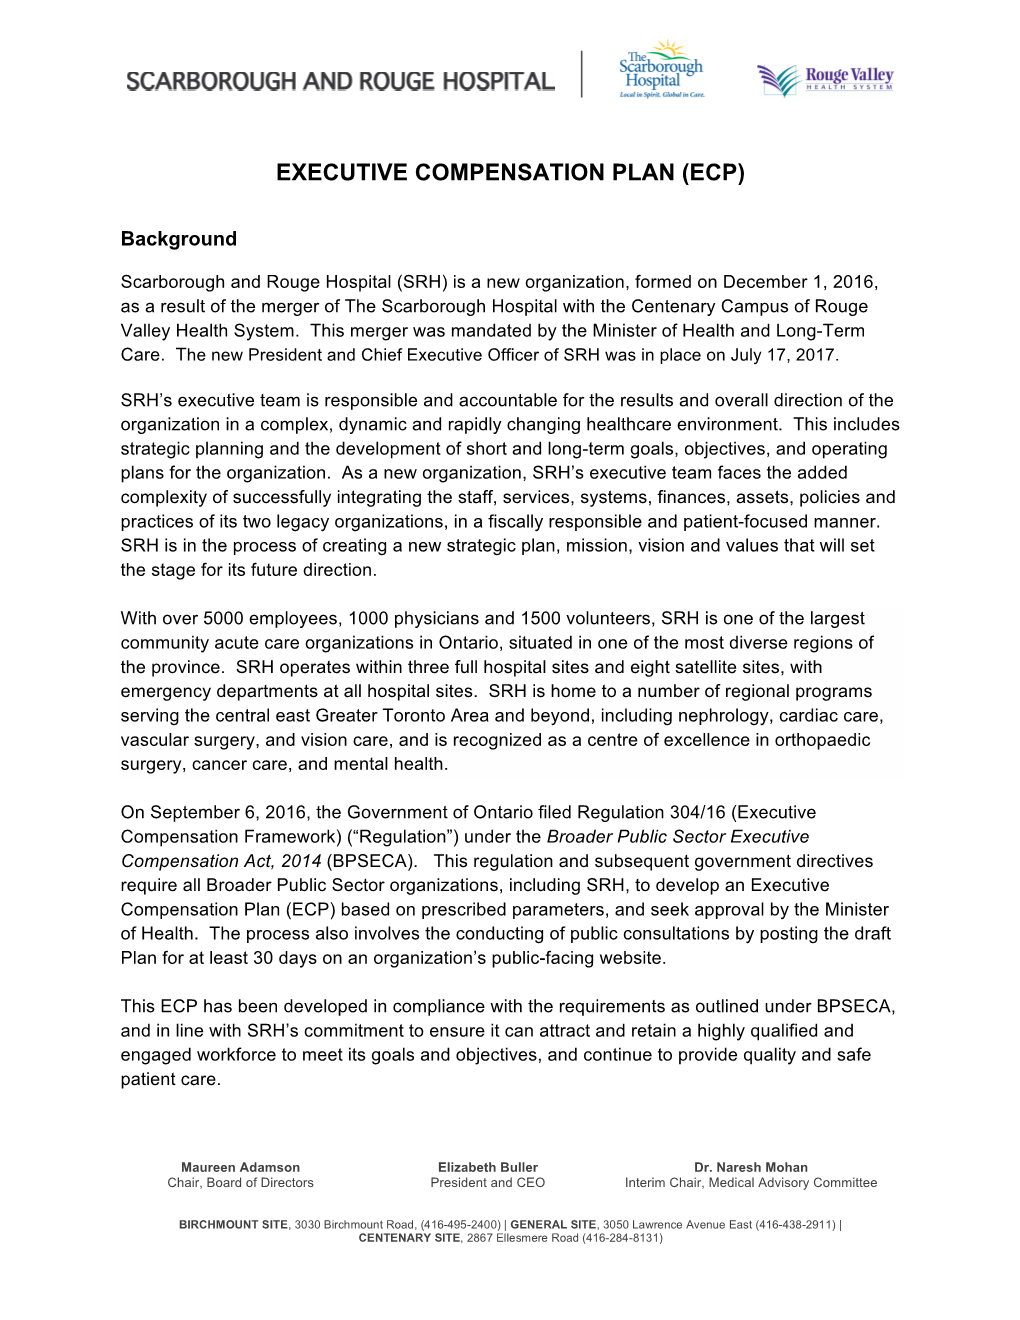 Executive Compensation Plan (Ecp)